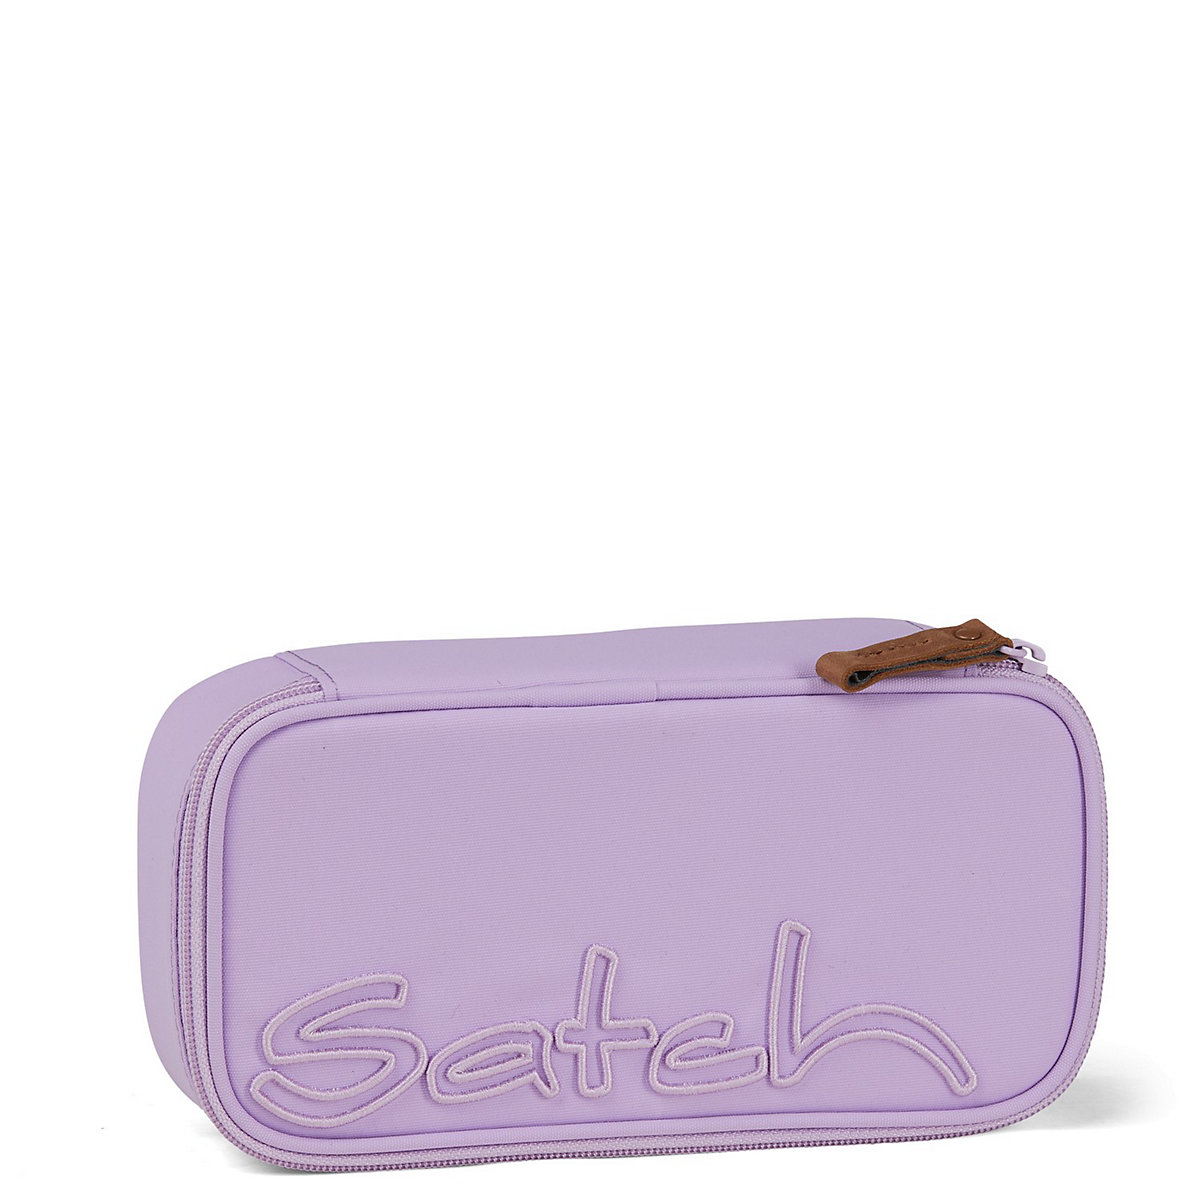 Satch Schlamperbox Nordic Purple unbefüllt inkl. Geodreieck